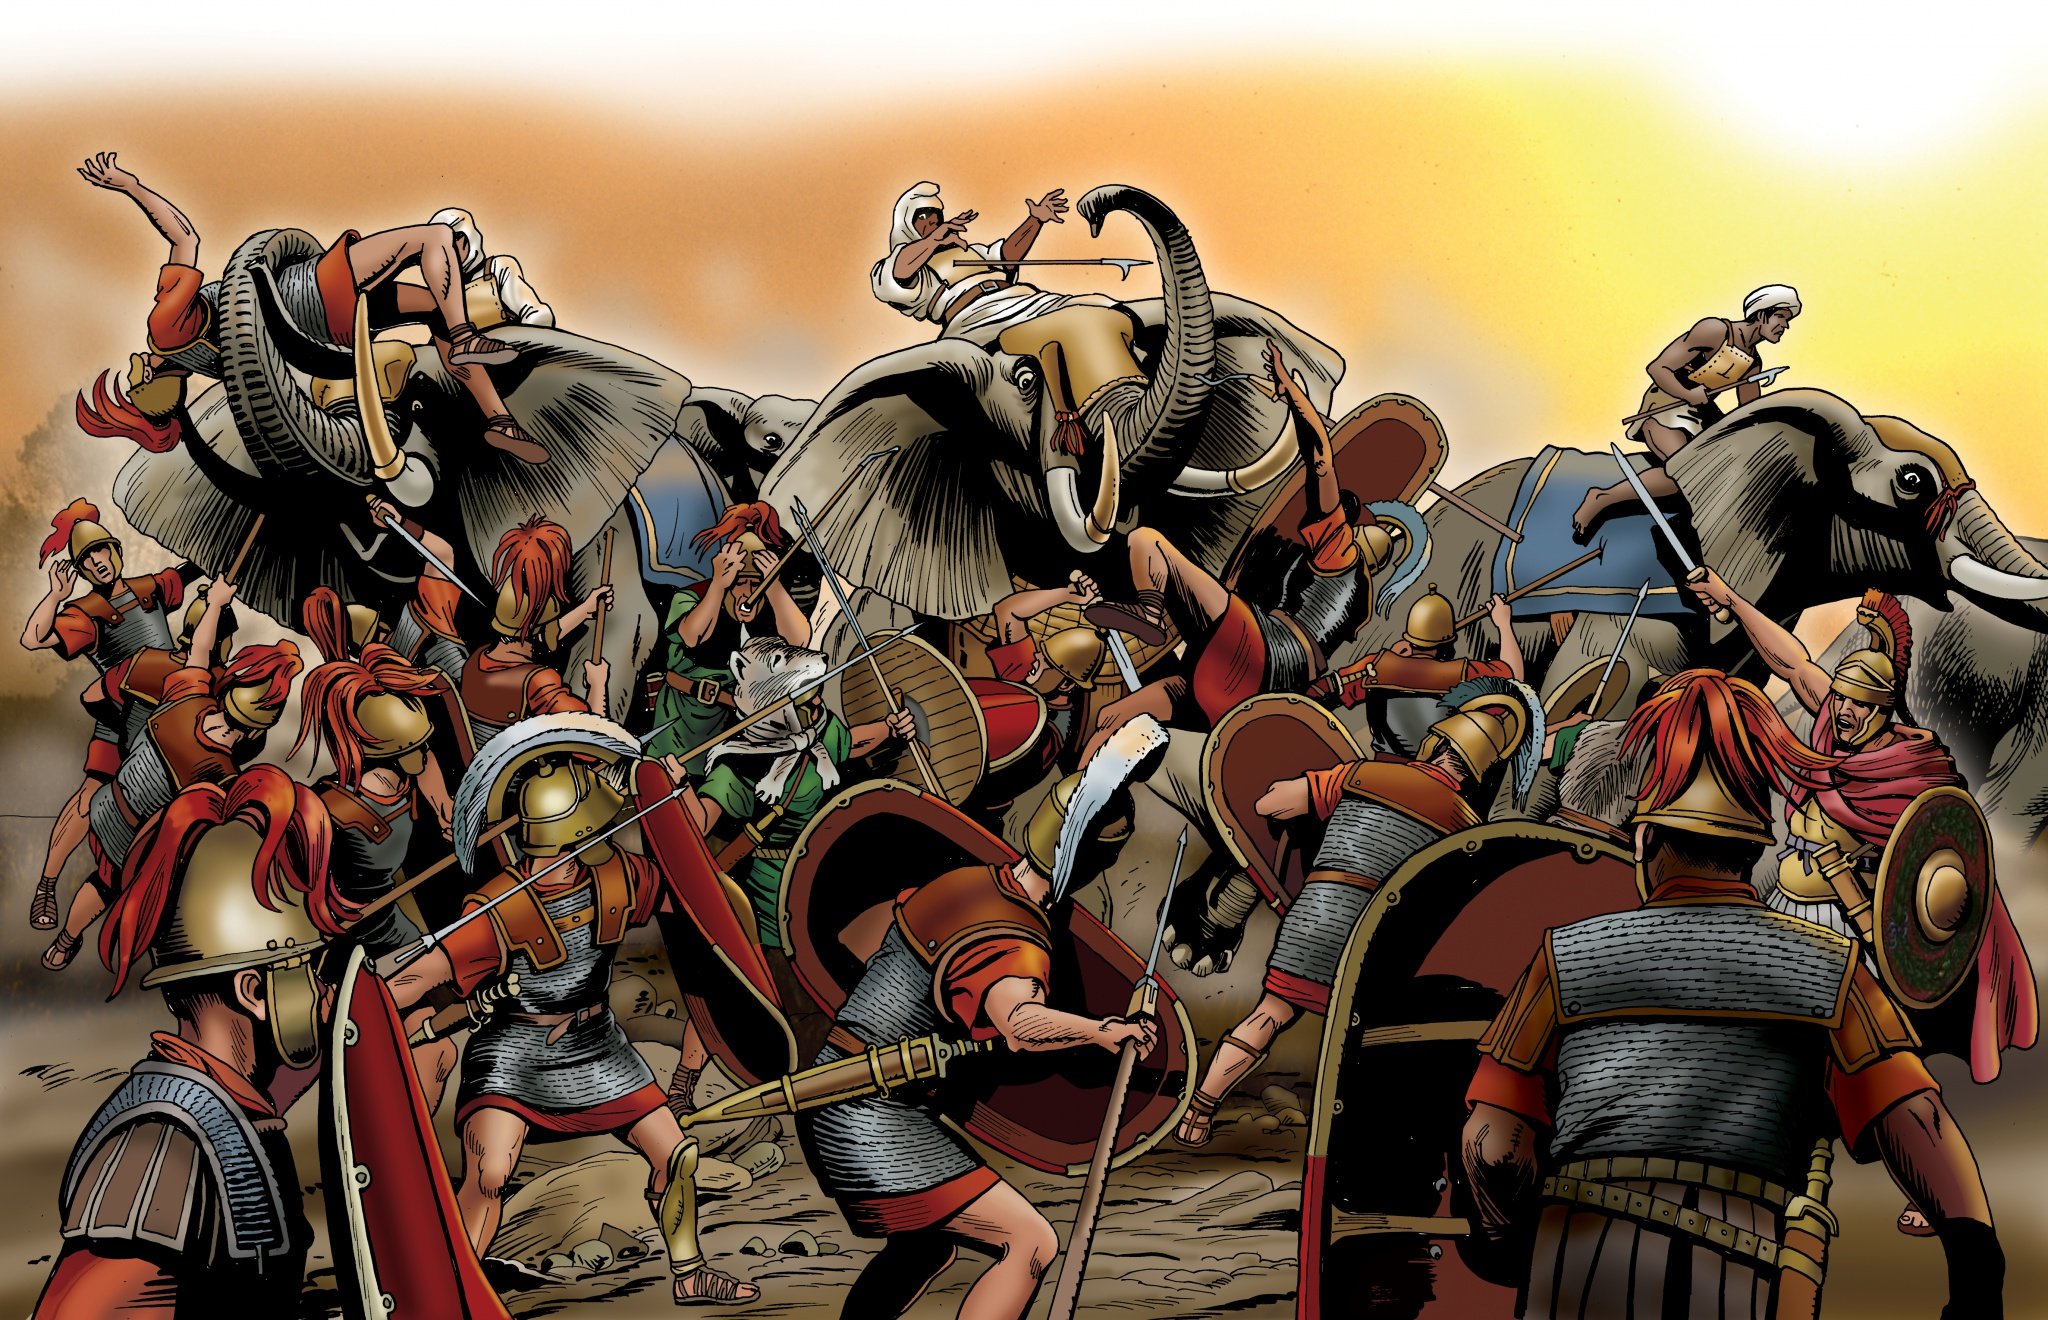 Римская армия до нашей эры. Битва при заме 202 г. до н.э.. Битва при заме Карфаген против Рима. Римские легионеры арт Карфаген. Карфаген против Рима арт.